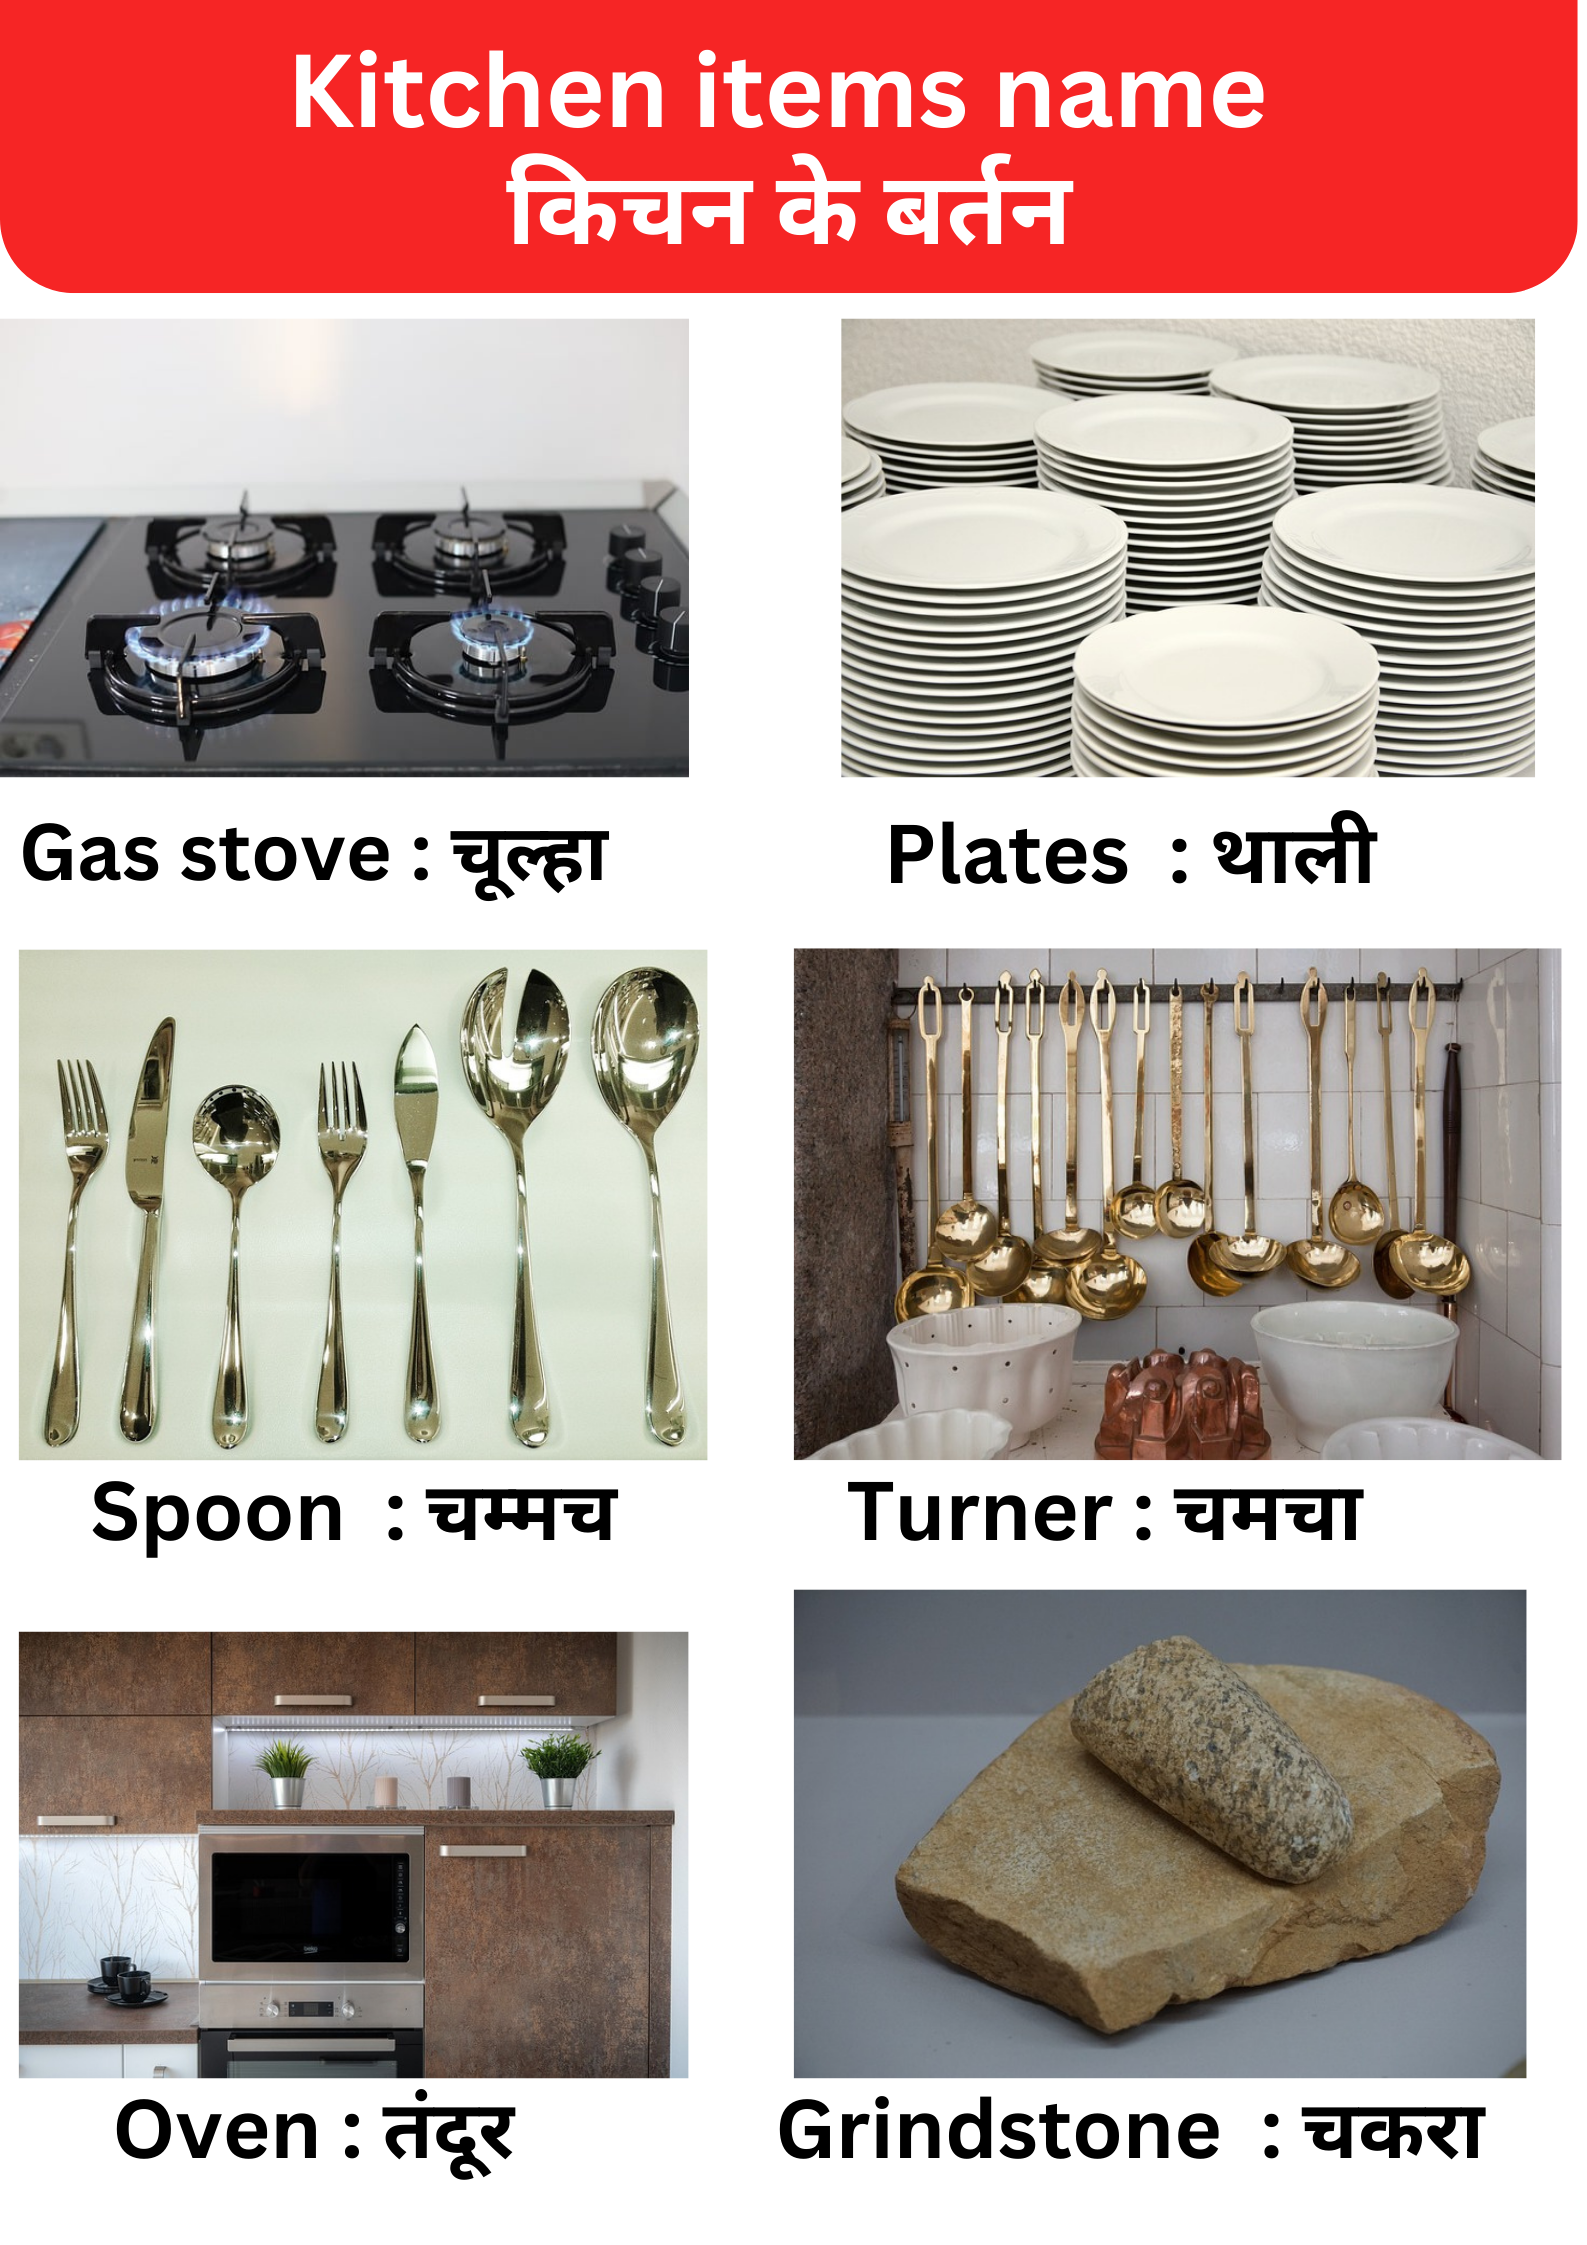 किचन के बर्तनों के नाम | 20 Kitchen items name in hindi | Utensils names